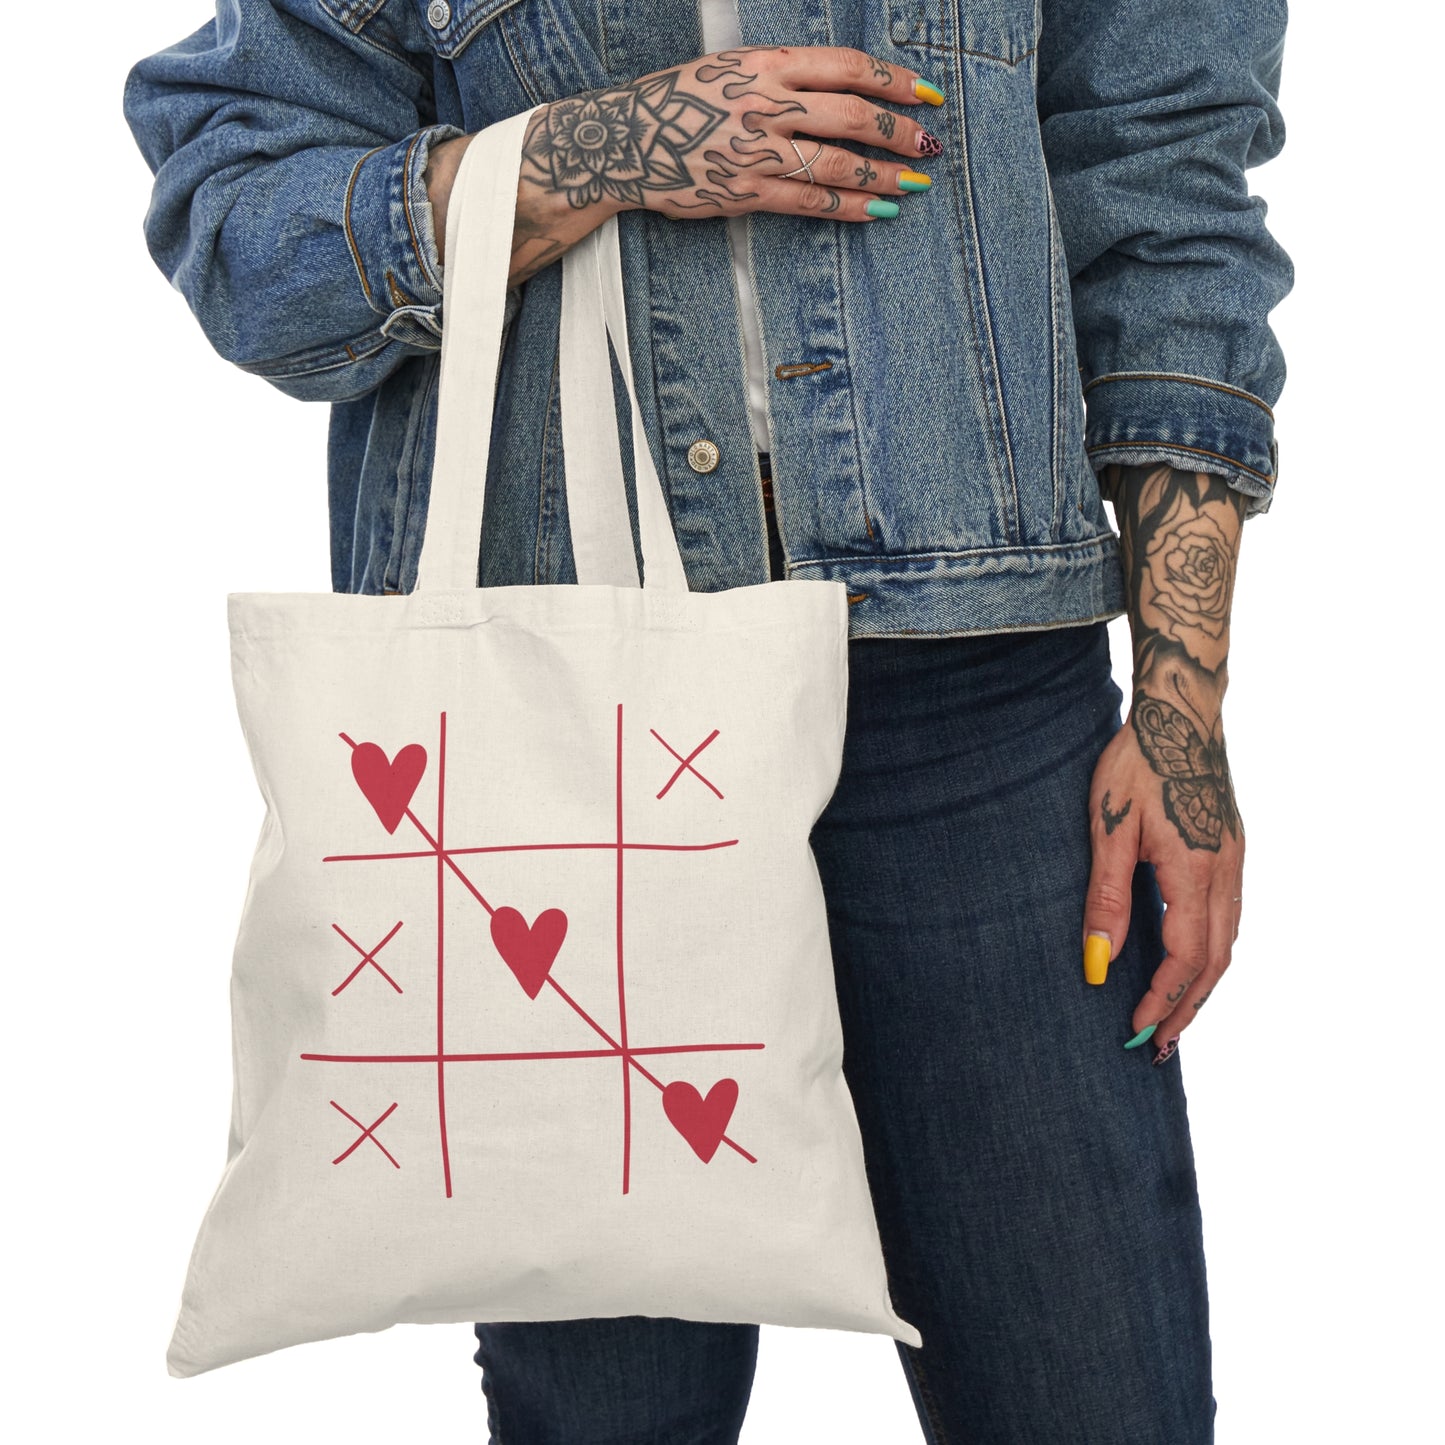 Natural Tote Bag- 3 Hearts Print